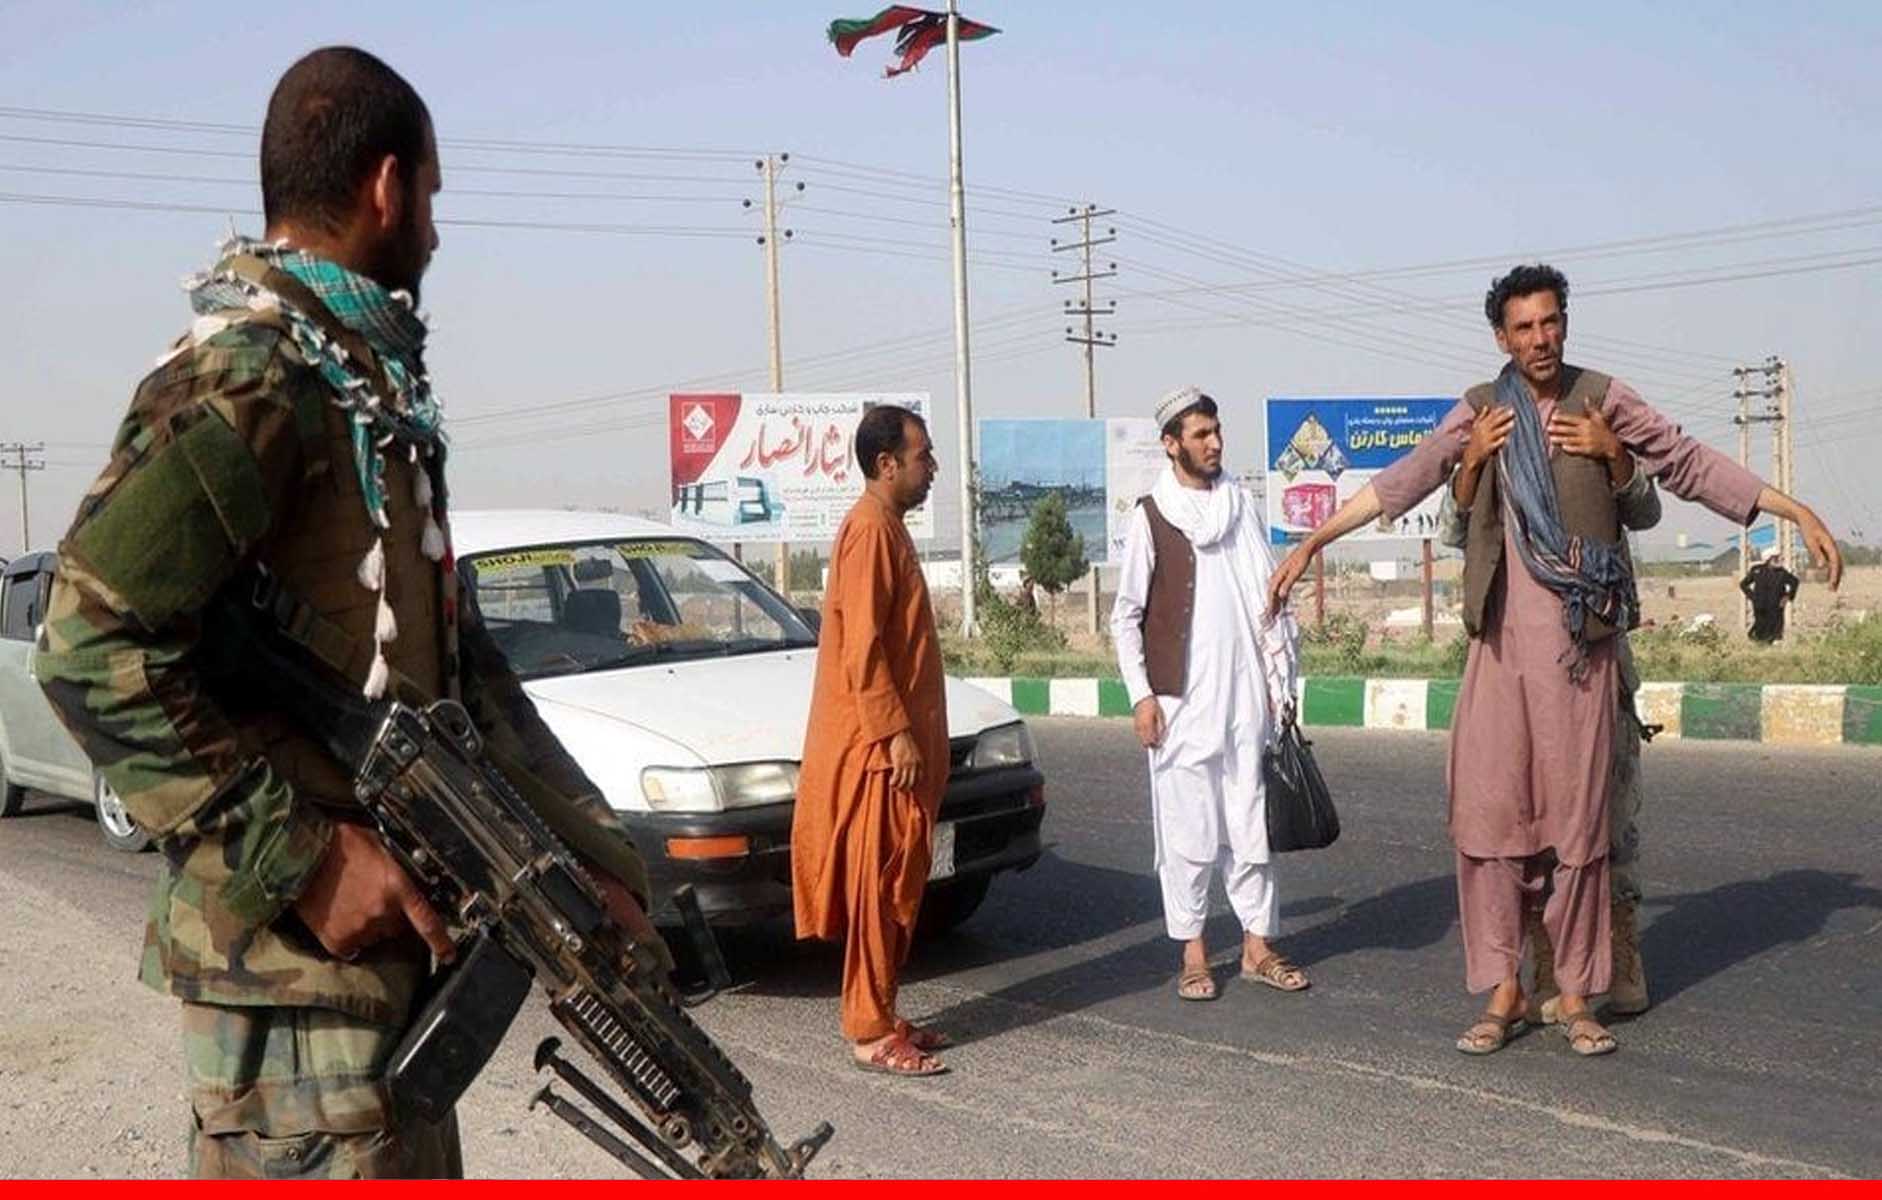 तालिबान अब अफगानिस्तान में वसूलने लगा टैक्स, आवाजाही पर देना पड़ा रहा चार्ज